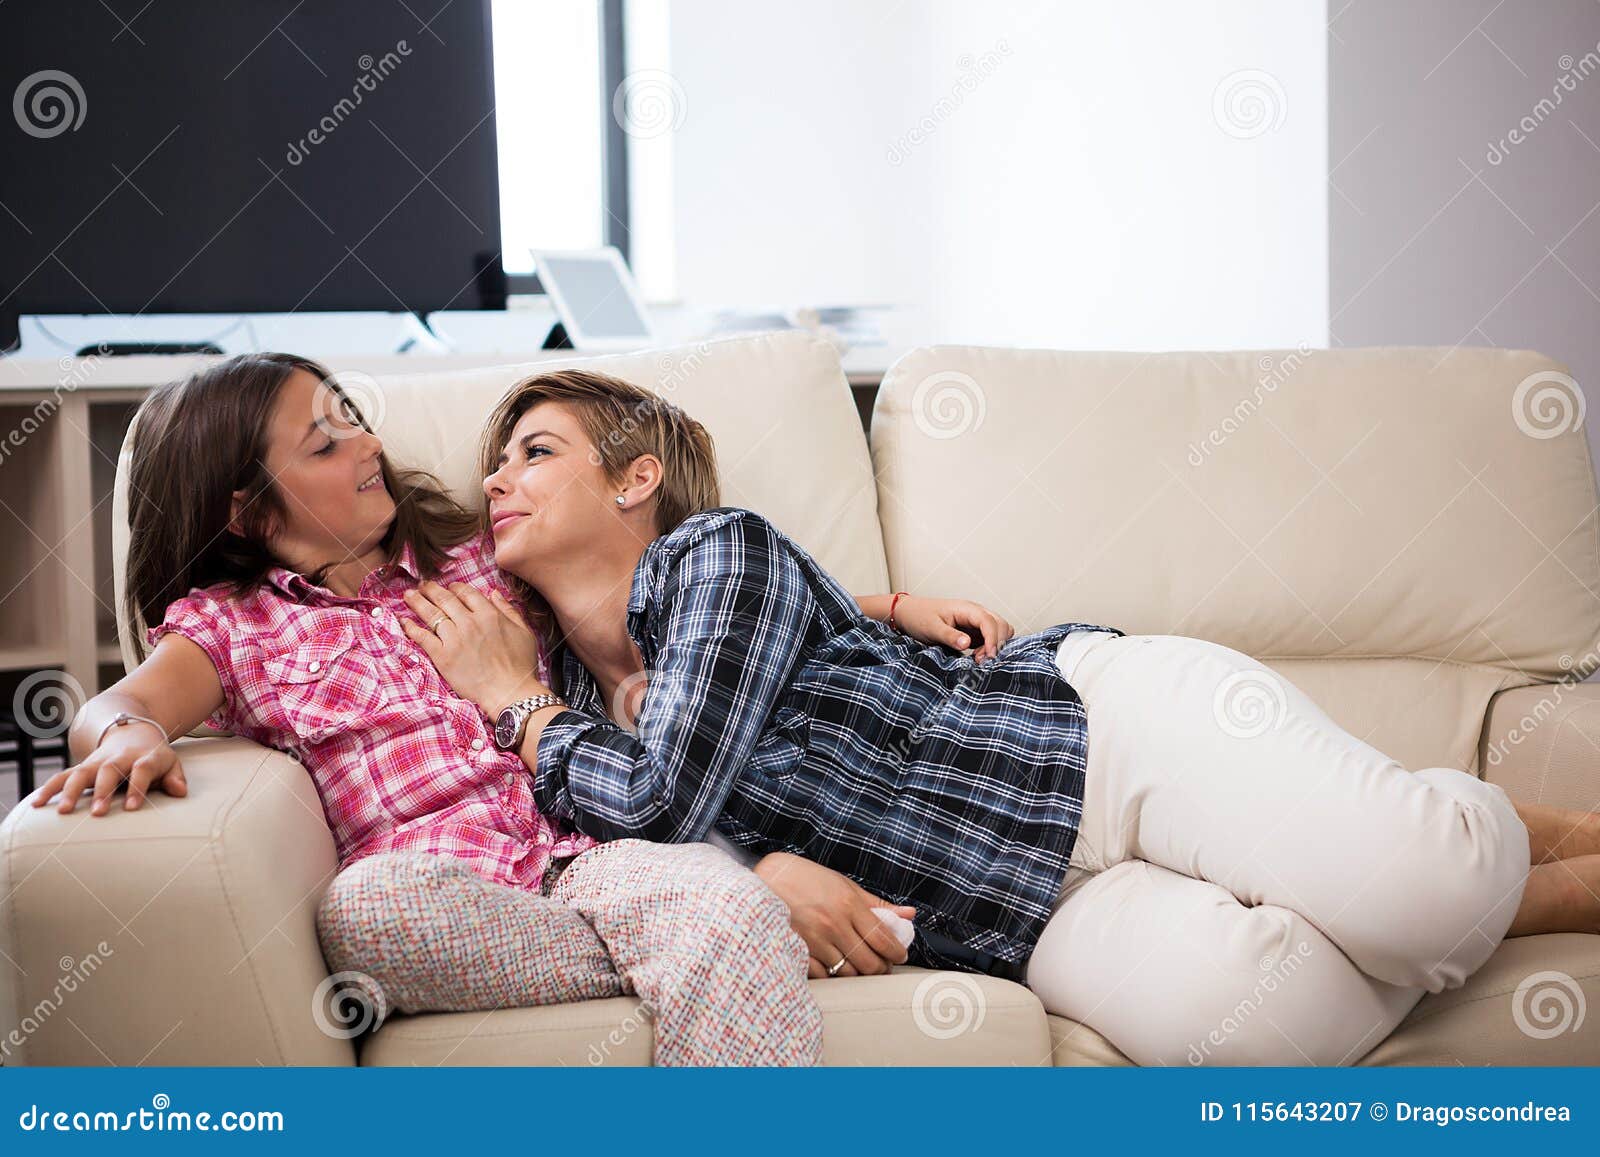 Русская мама с дочкой занимаются. Дочь лежит на матери. Дочь лежит у мамы на коленях. Дочка лежит на маме. Мама на диване.